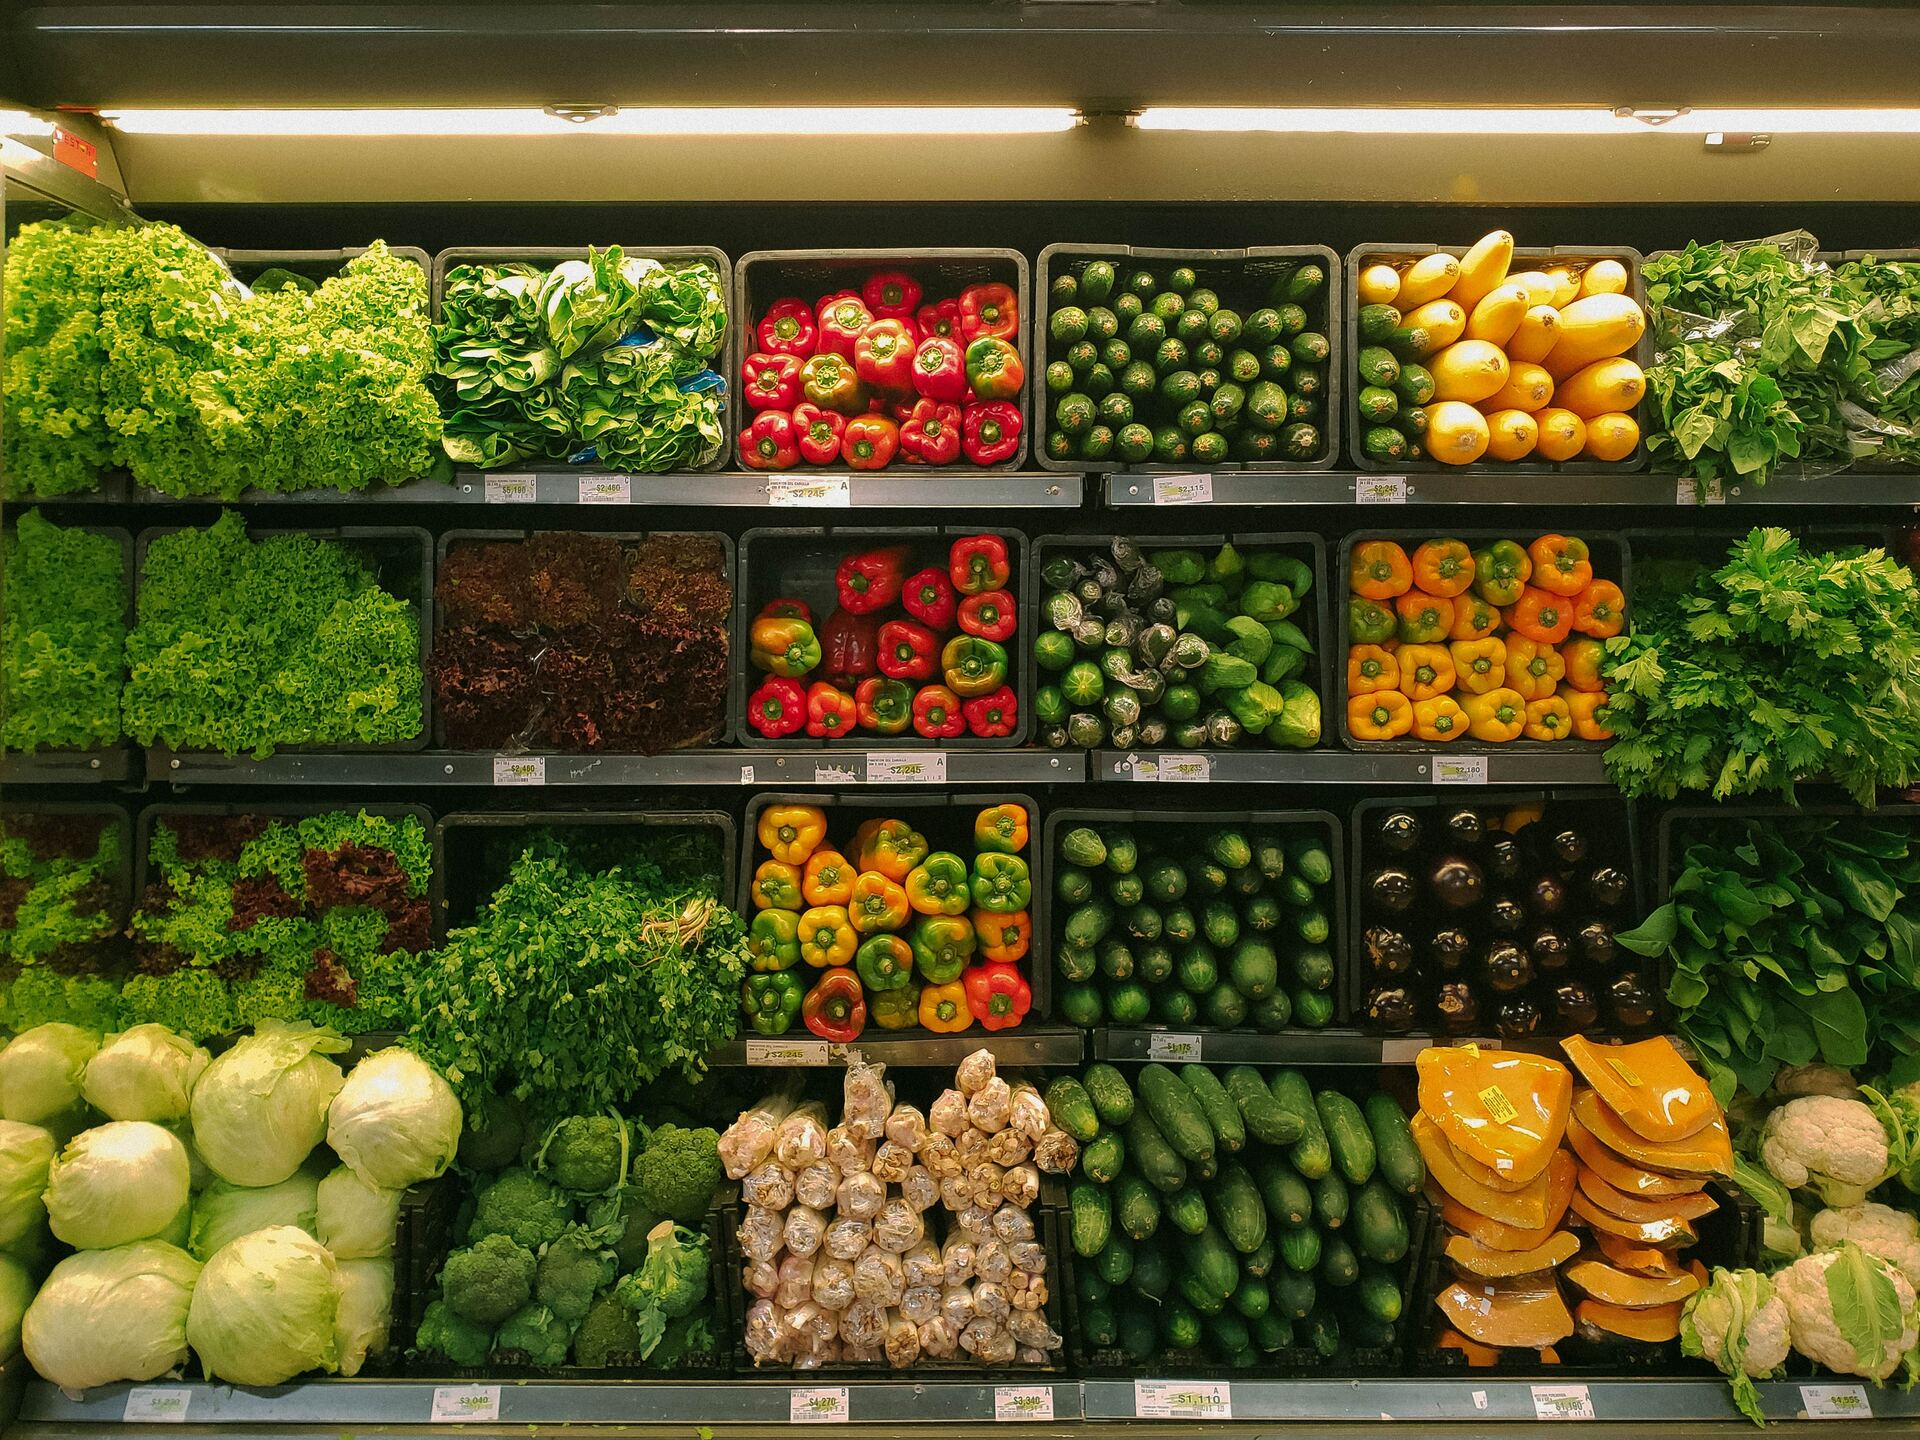 Frutas y verduras de temporada para reforzar el sistema inmune